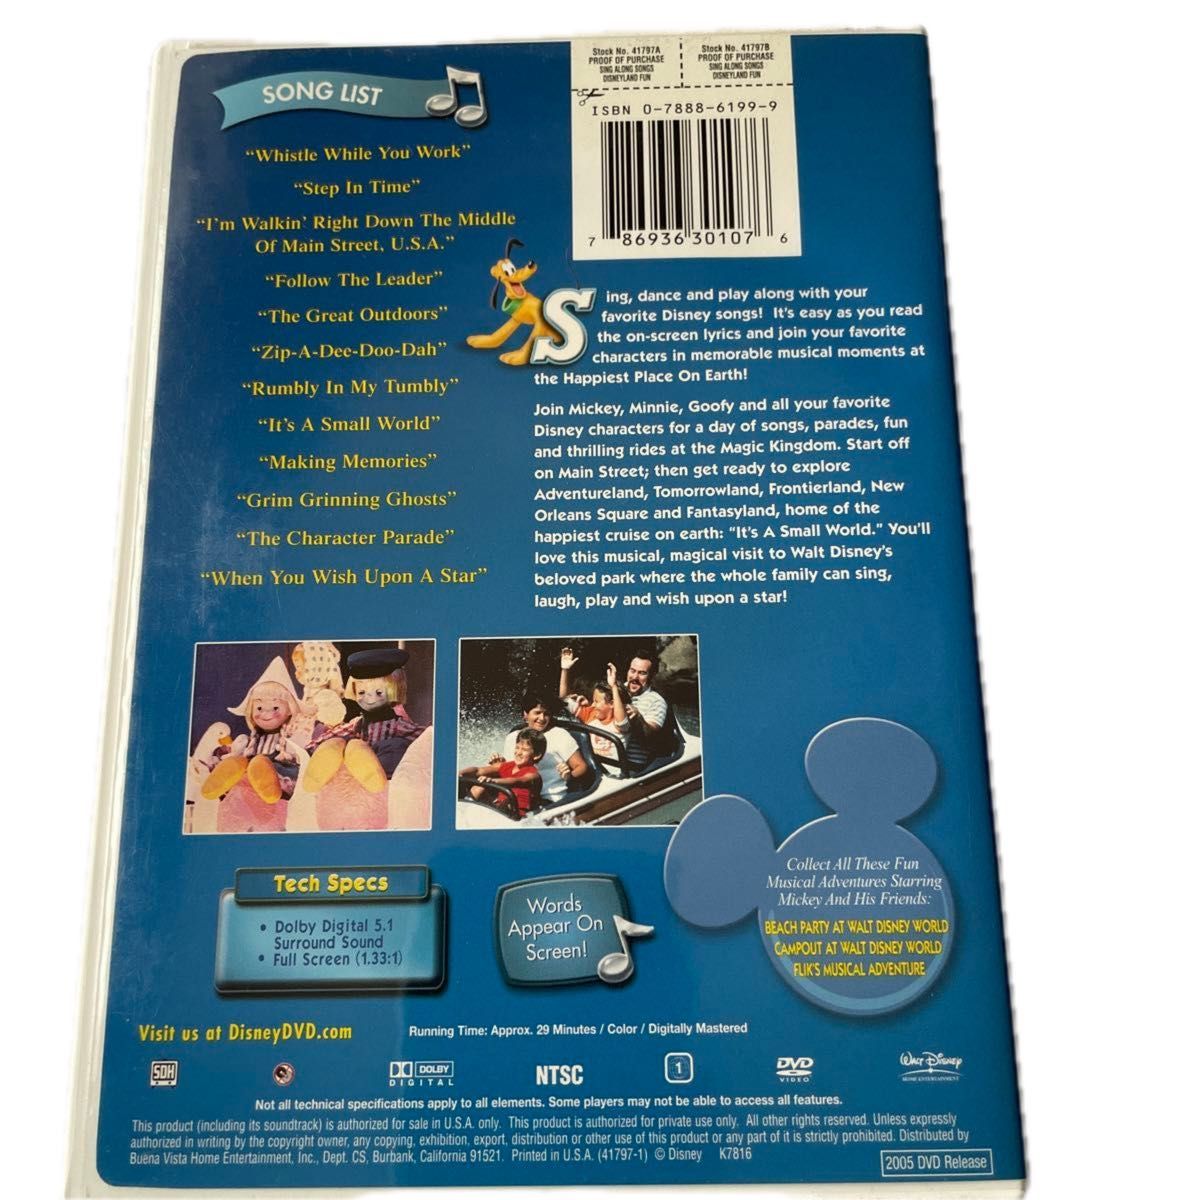 Sing-Along Songs: Disneyland Fun DVD 輸入盤